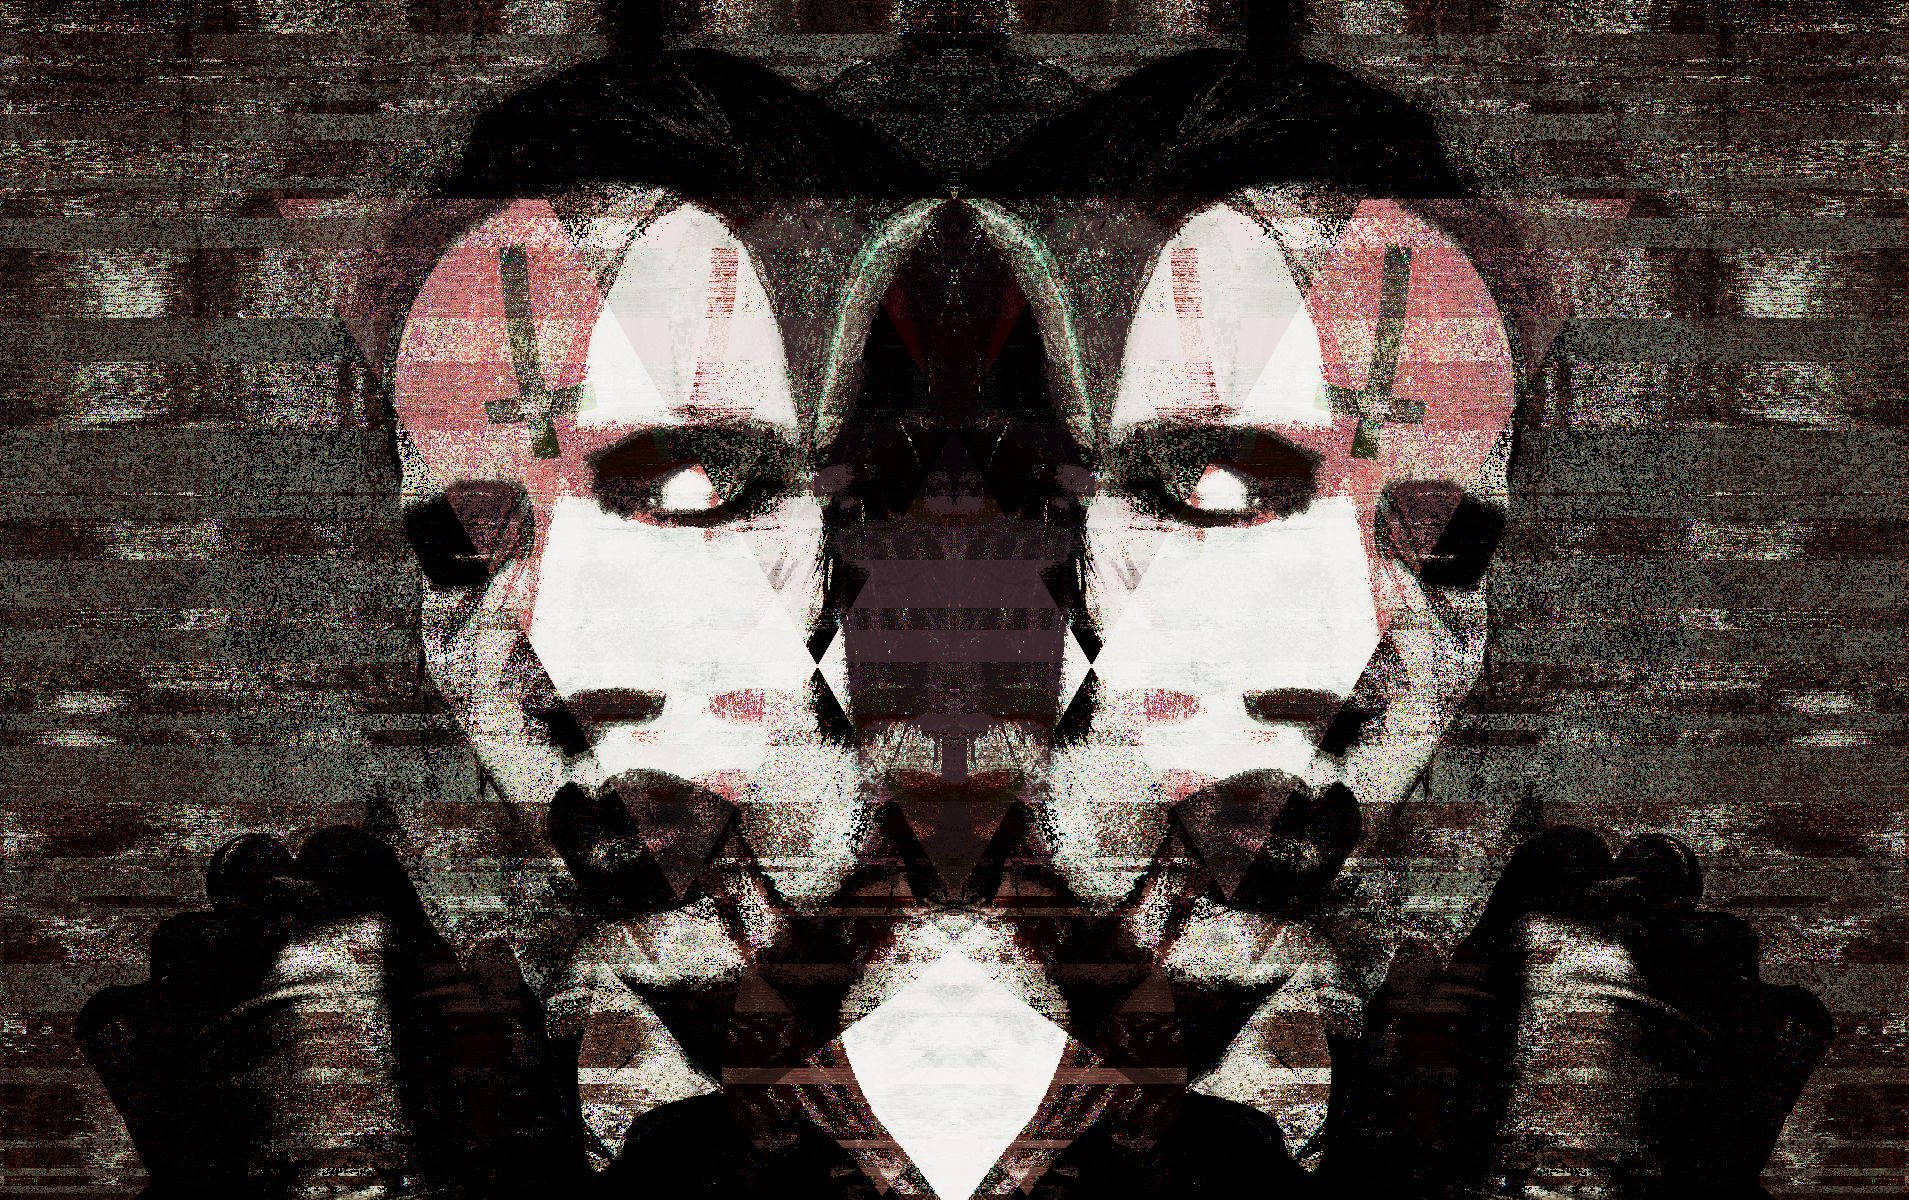 Det ikoniske Marilyn Manson-sang spiller på tapetet. Wallpaper